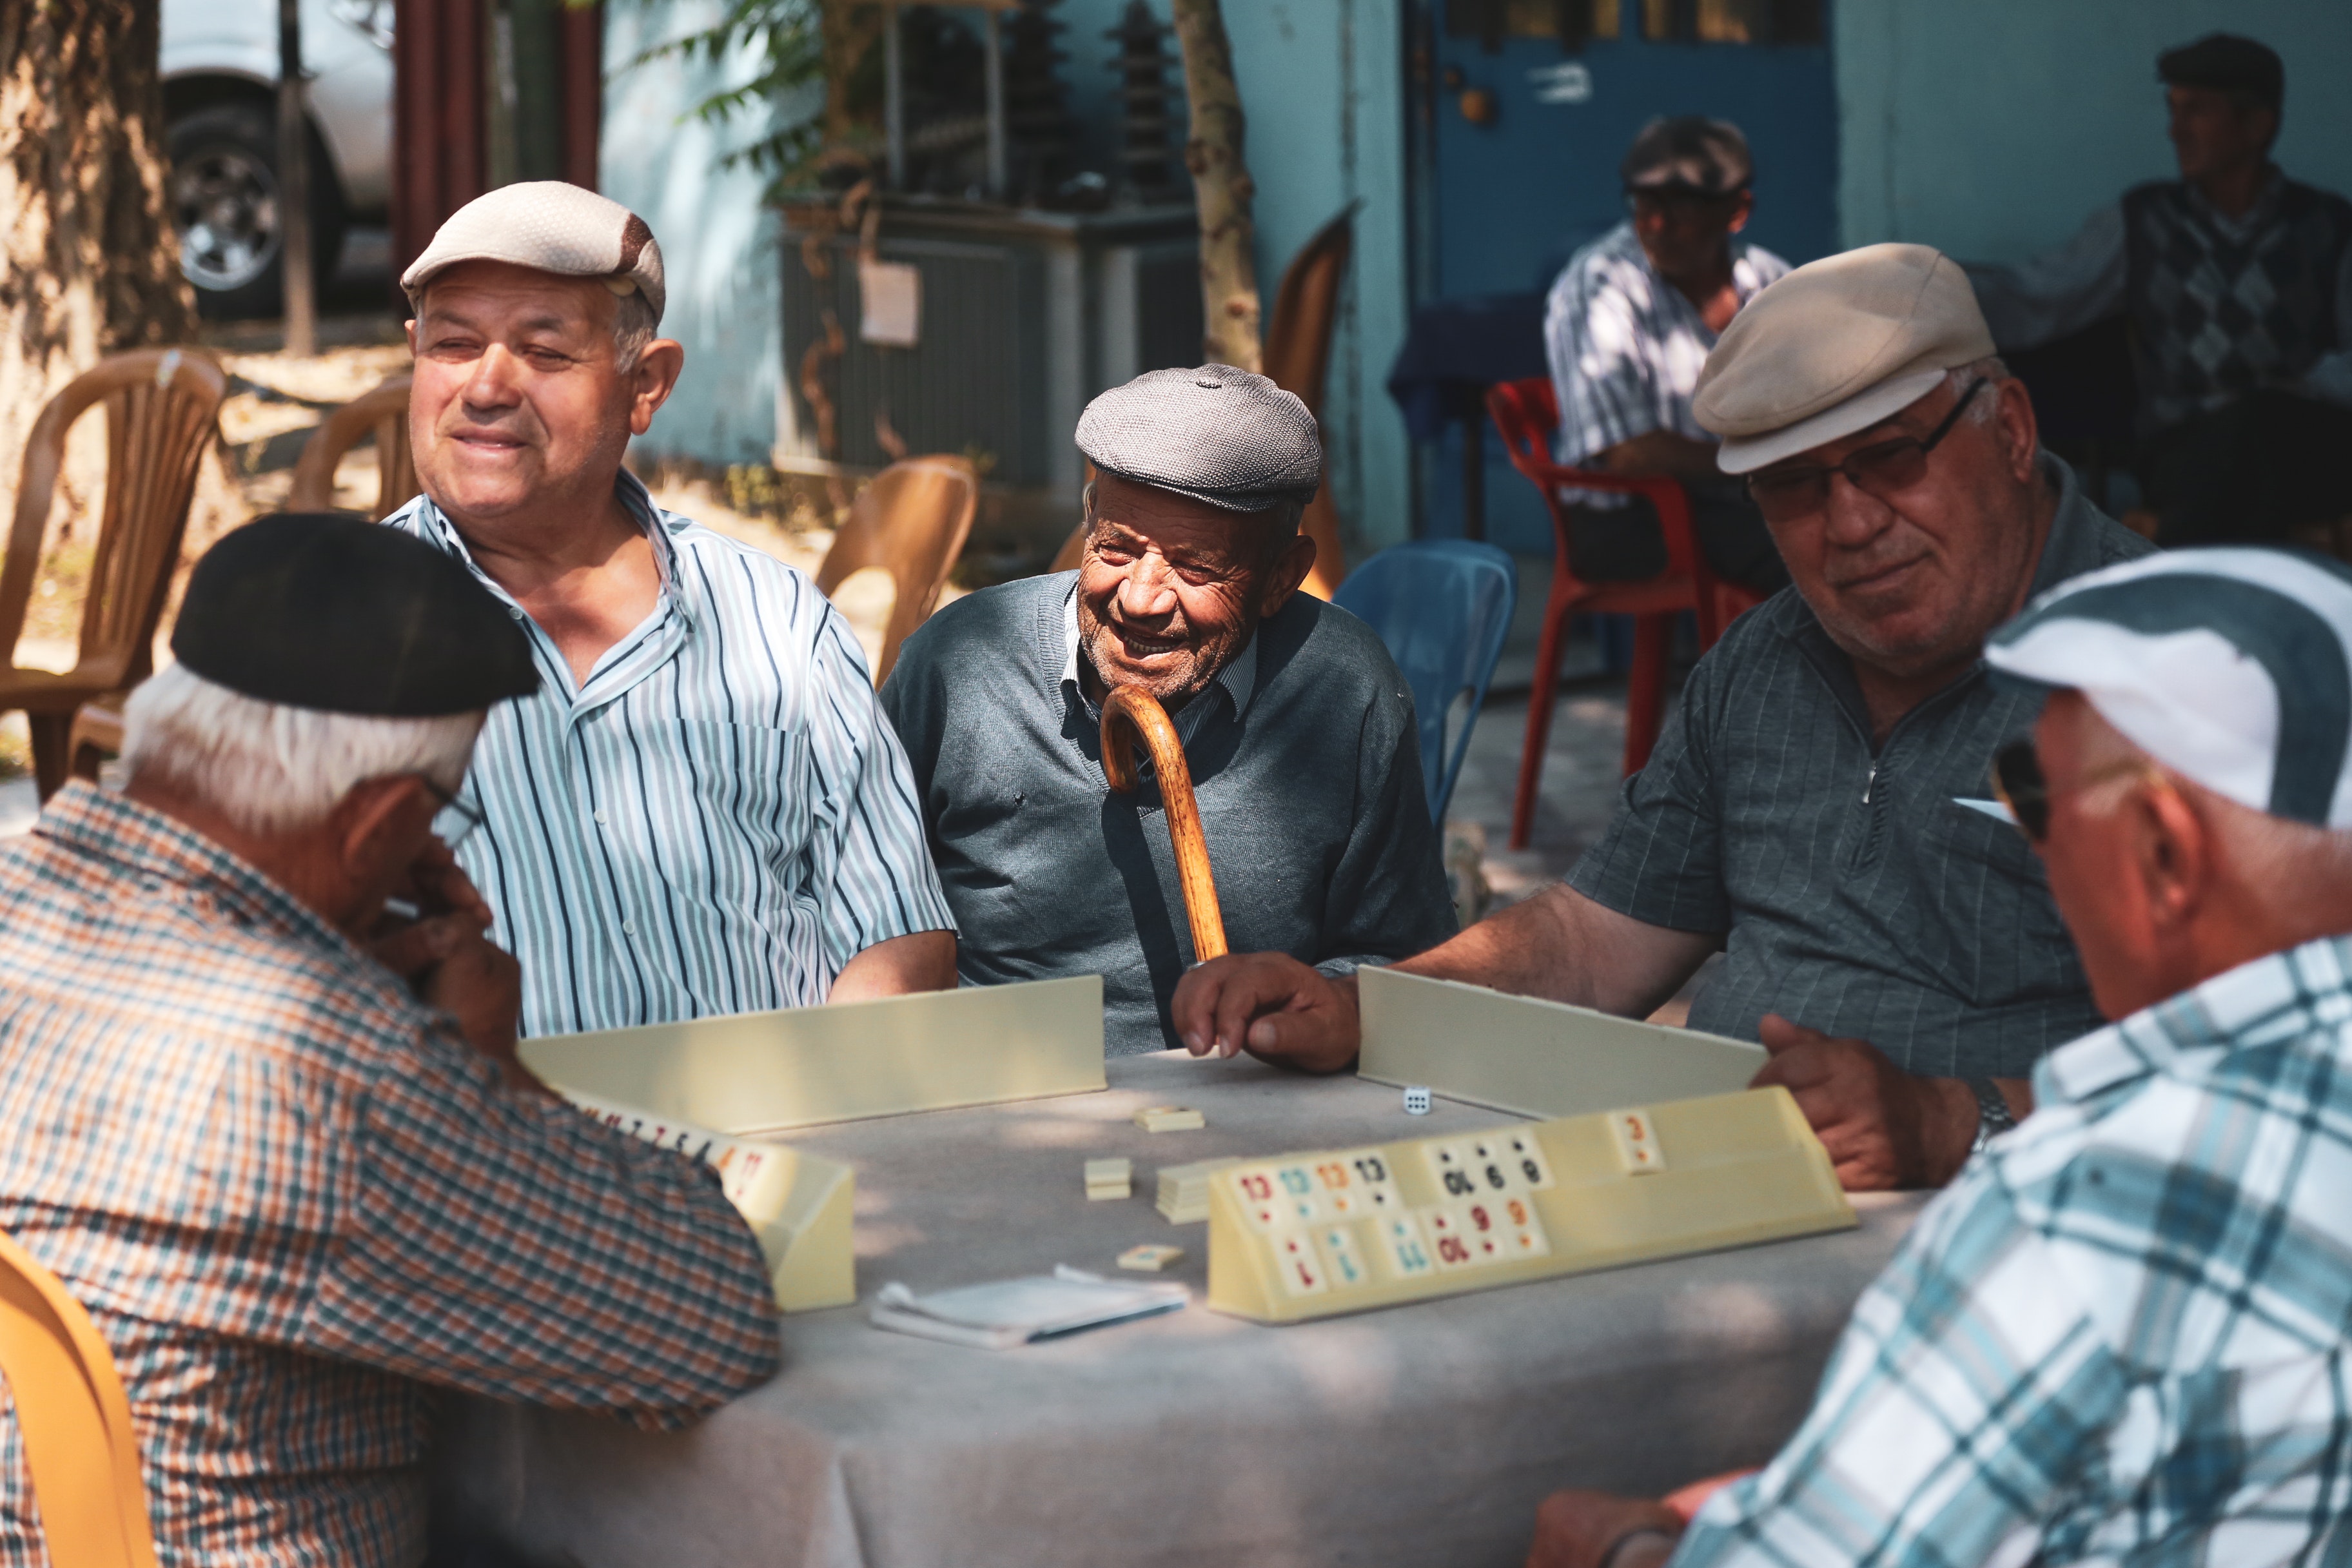 La imagen muestra a cinco señores mayores jugando a un juego de mesa y charlando animadamente. Todos ellos llevan una boina y uno de ellos tiene un bastón.